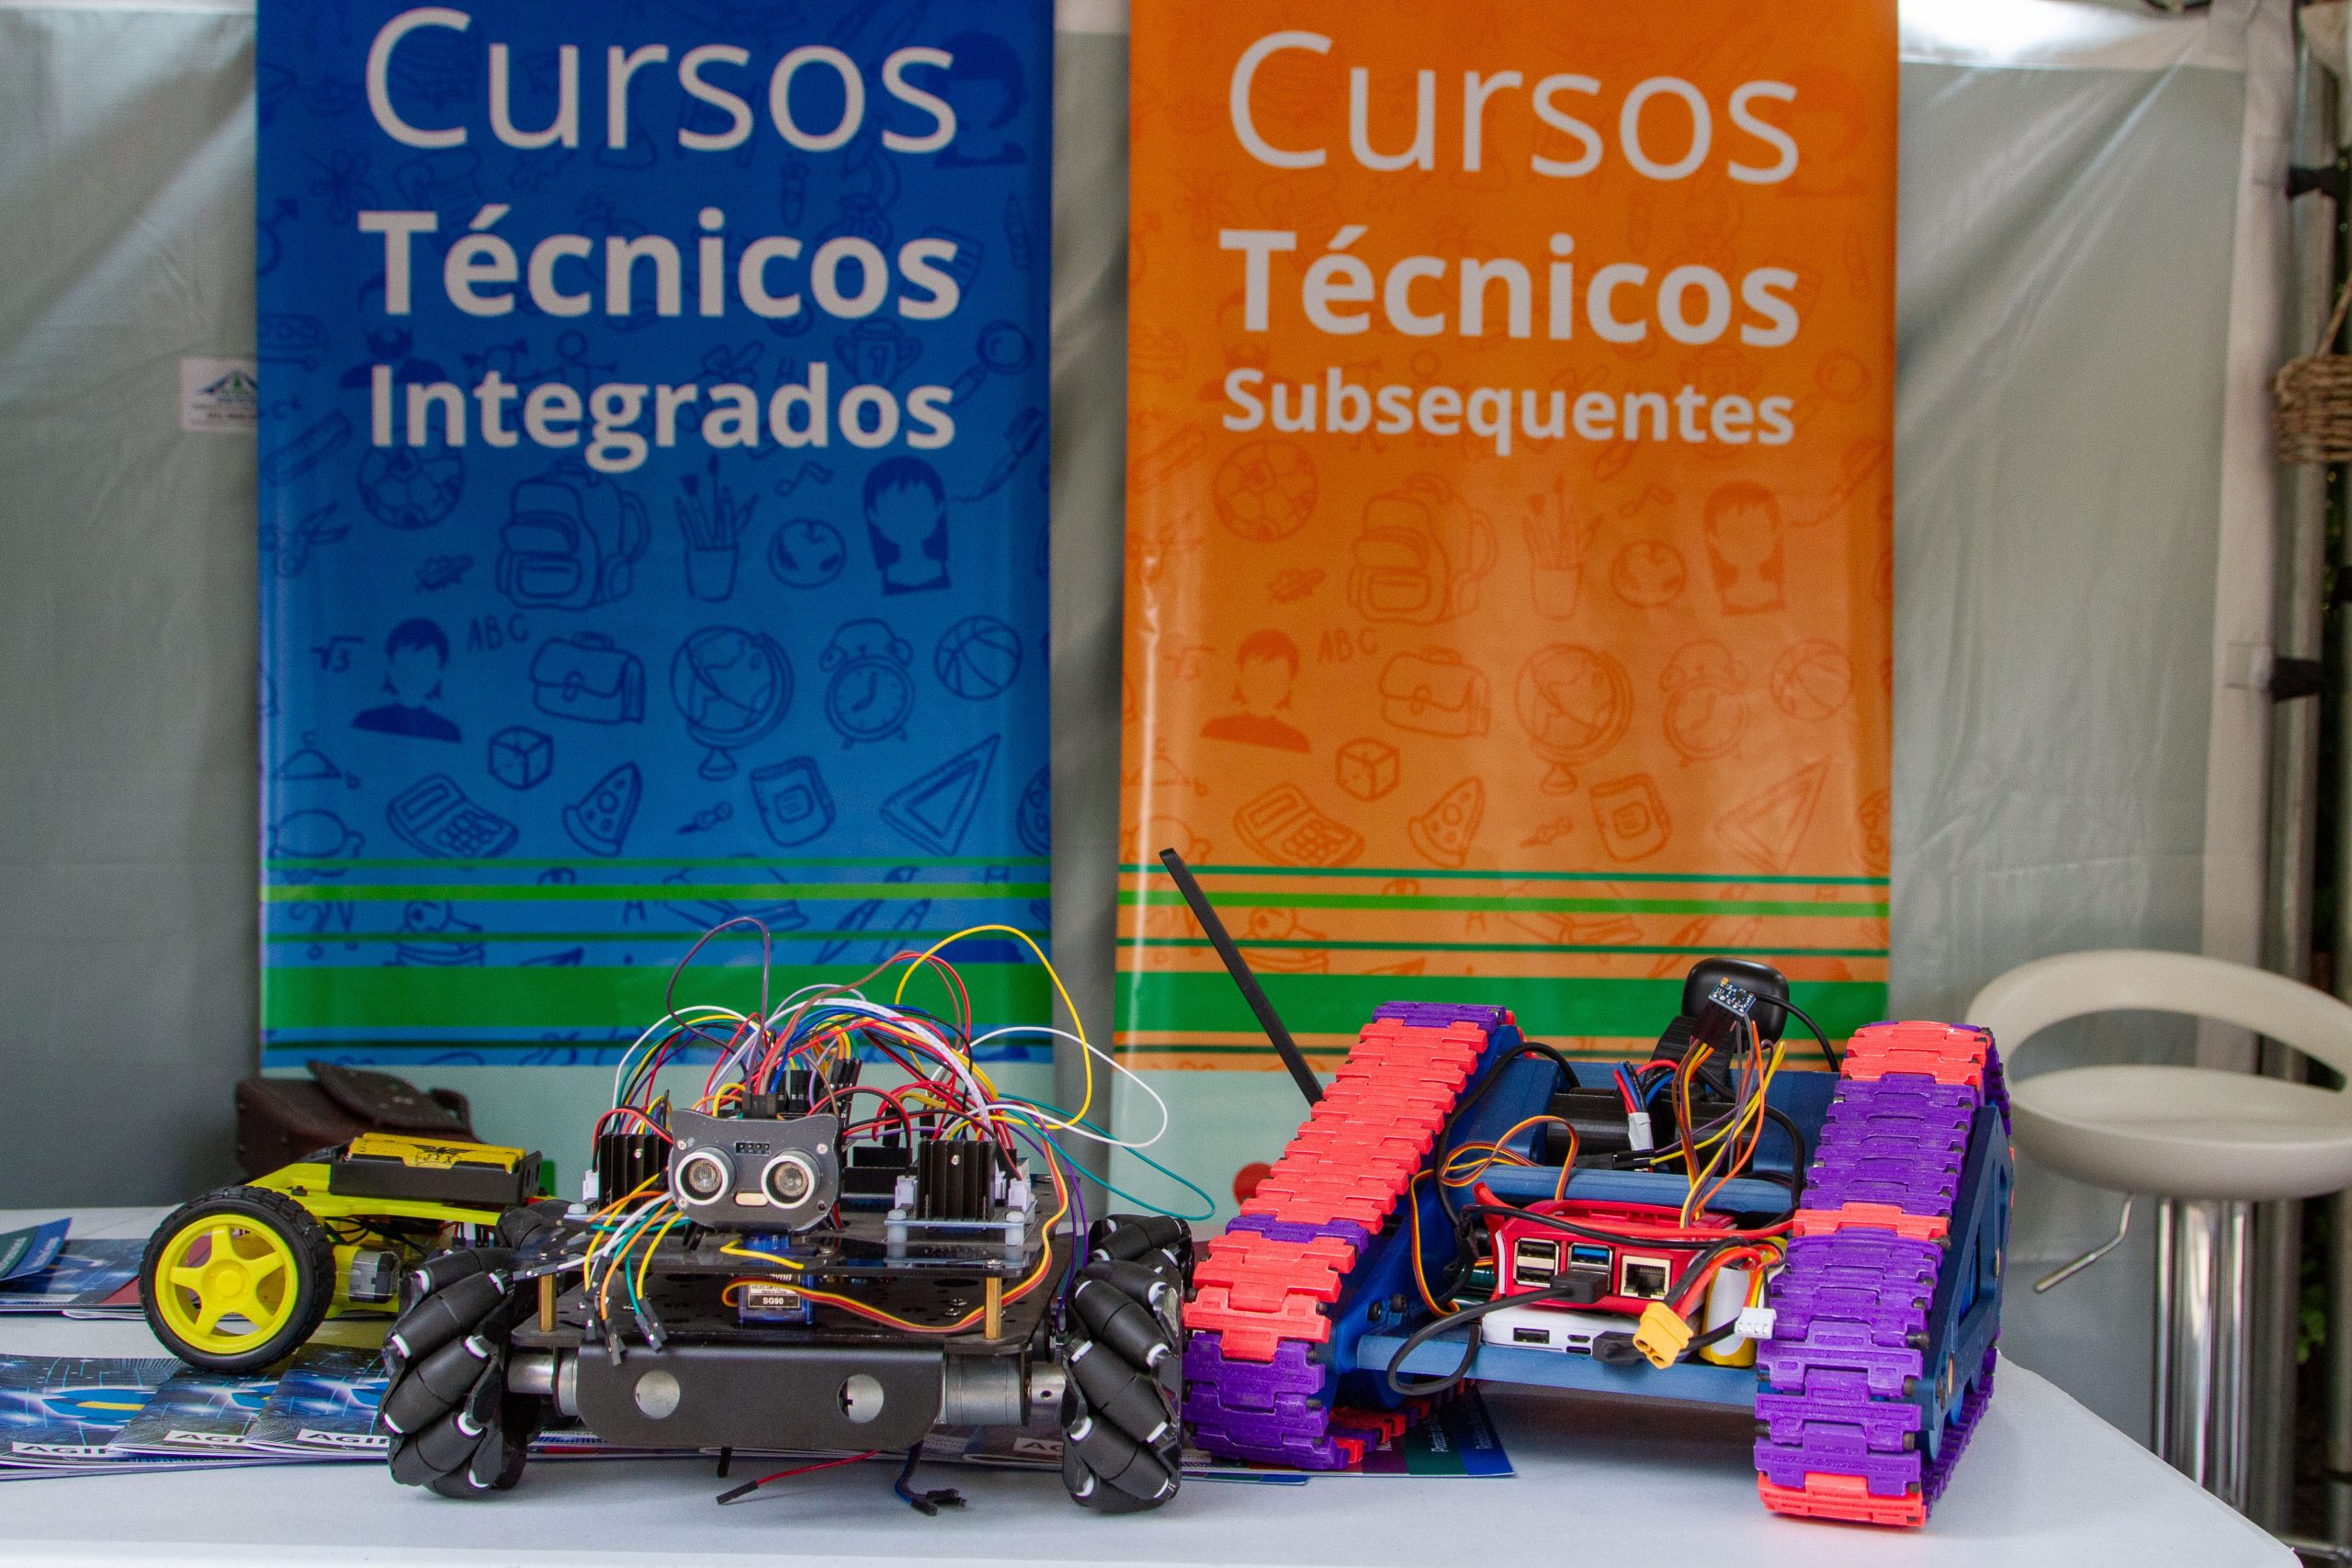 Fotografia em plano fechado com robôs à frente e dois banners coloridos atrás escrito: Cursos técnicos integrados e subsequentes